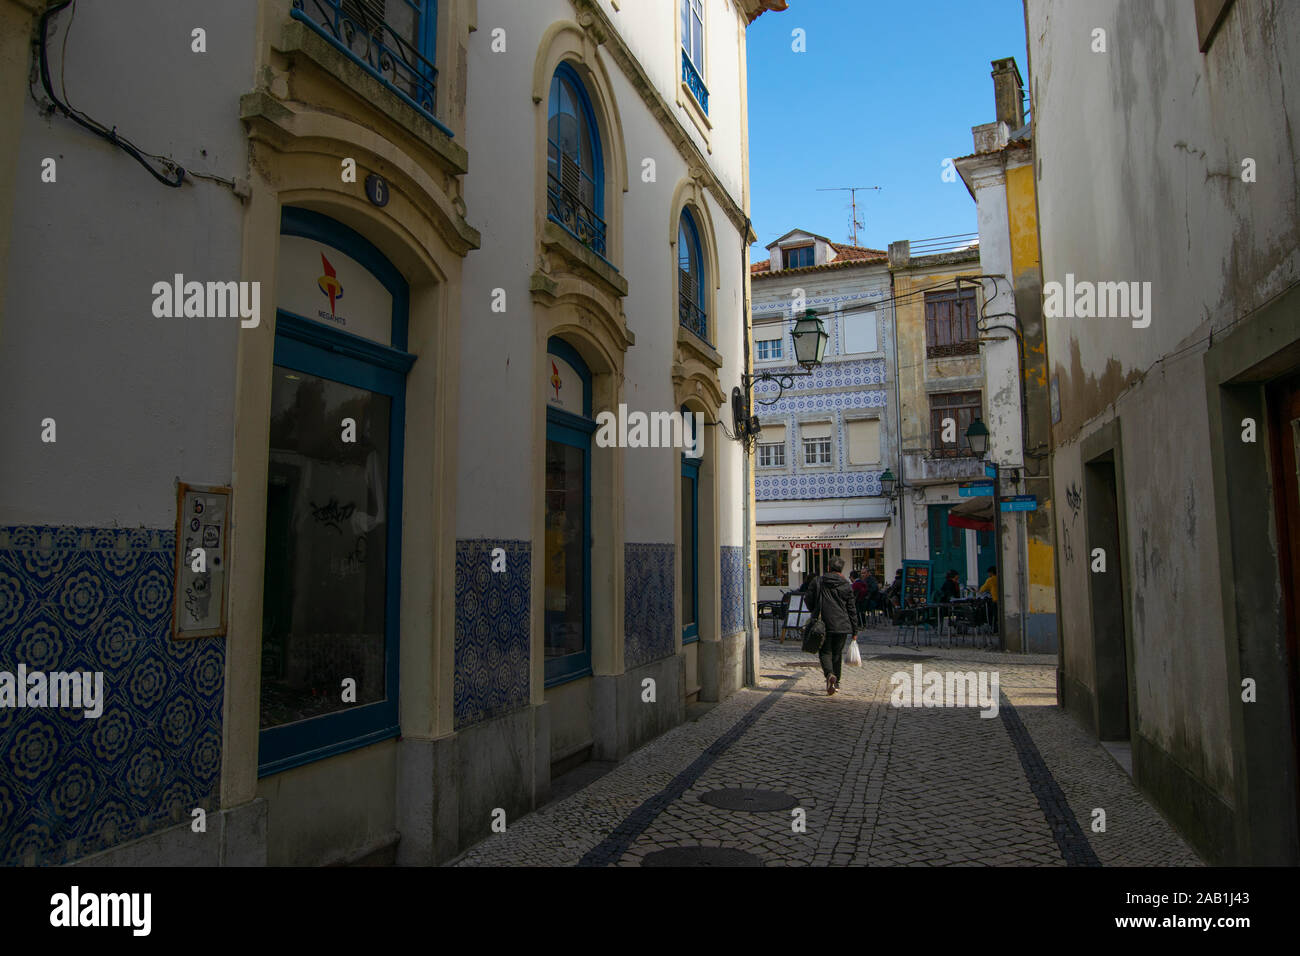 Street scene in central Aveiro Portugal Stock Photo